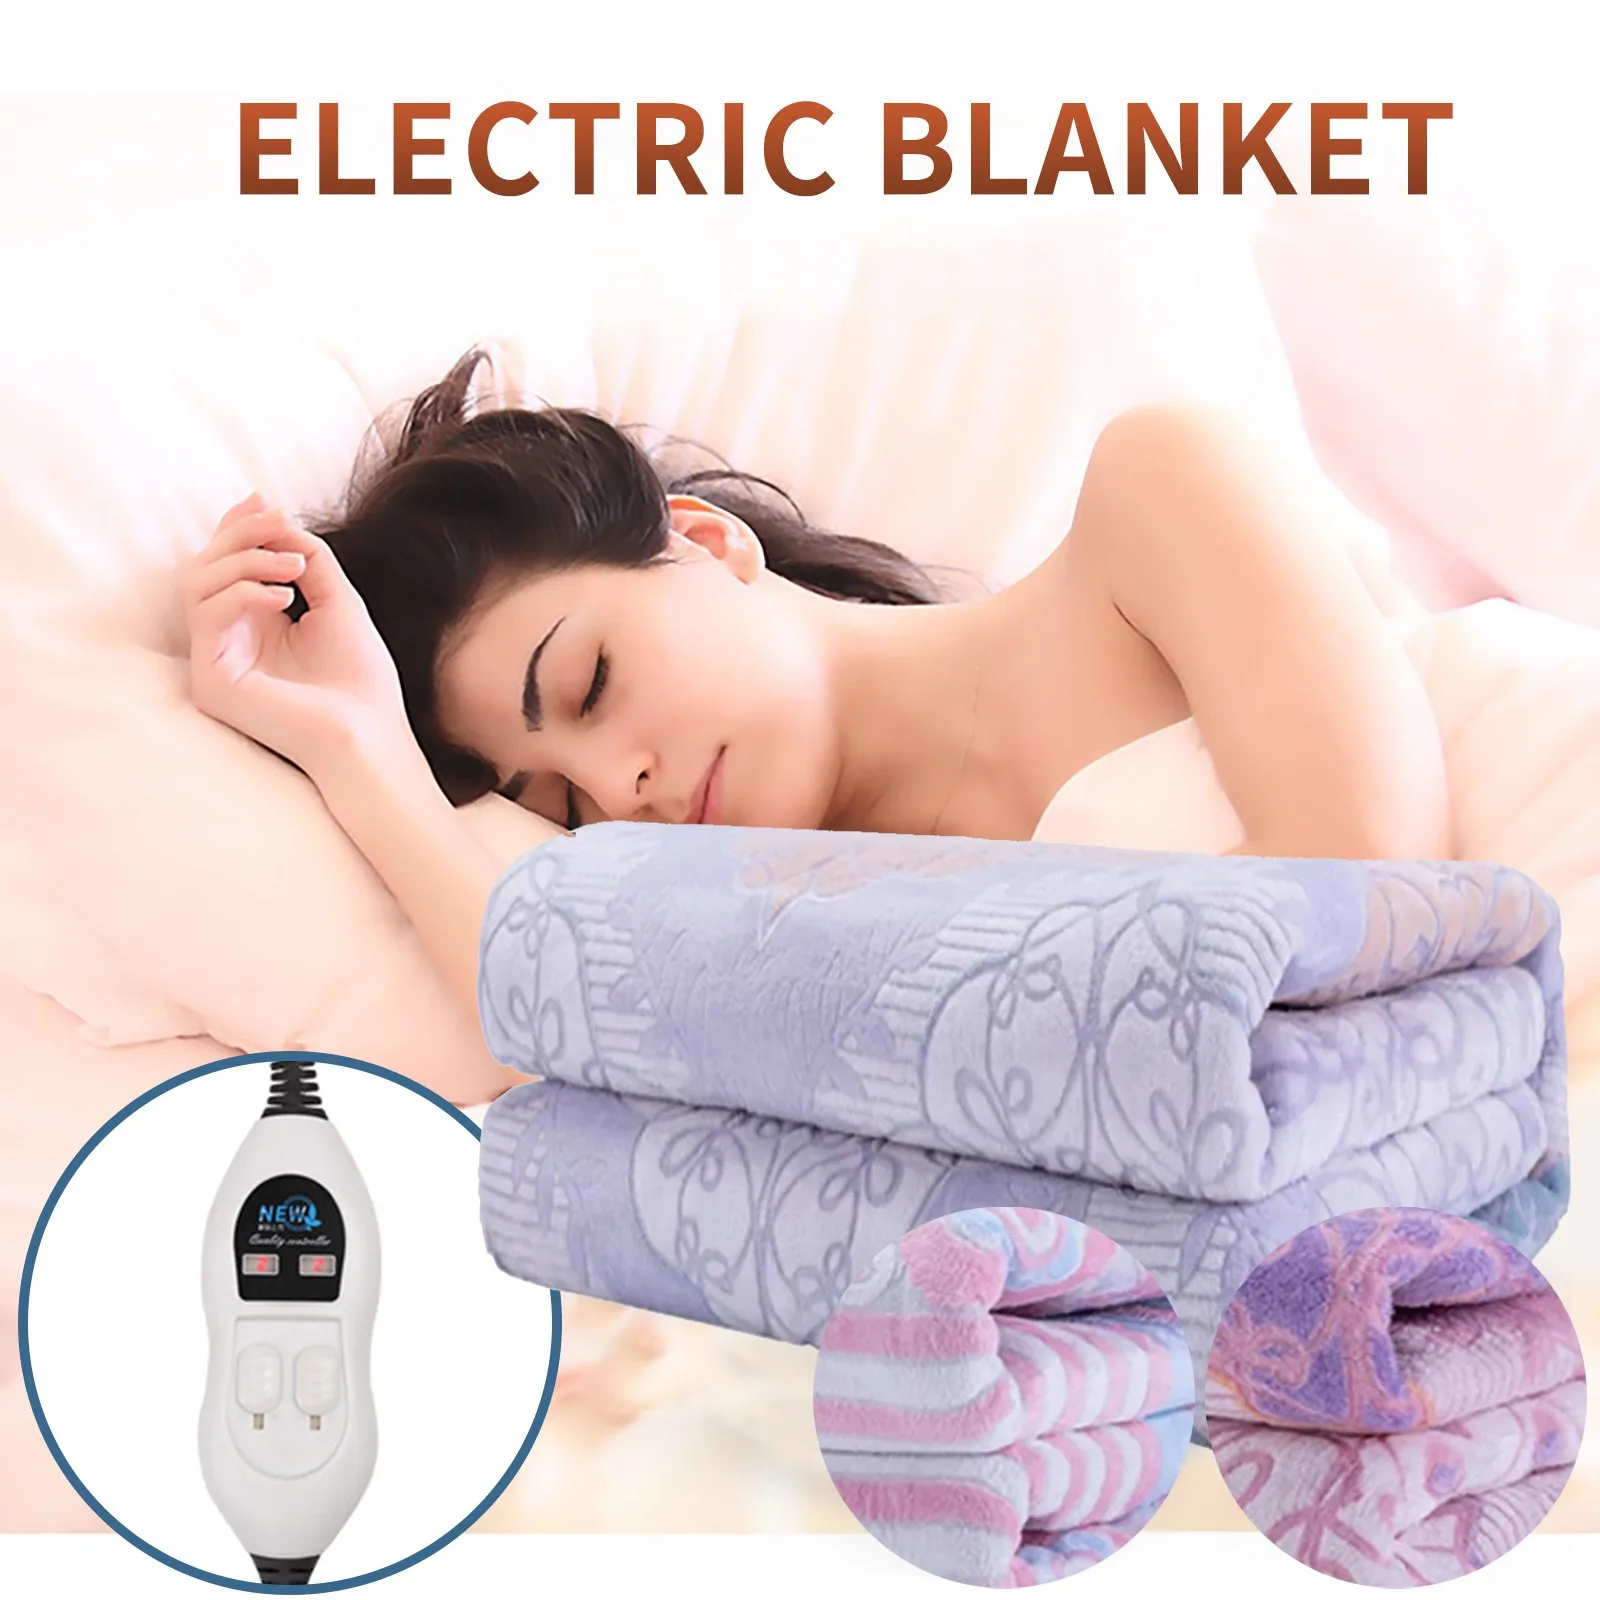 

110-220 В утолщенный одиночный электрический Матрас с термостатом, электрическое одеяло, электрическое одеяло для безопасности, теплое электрическое одеяло